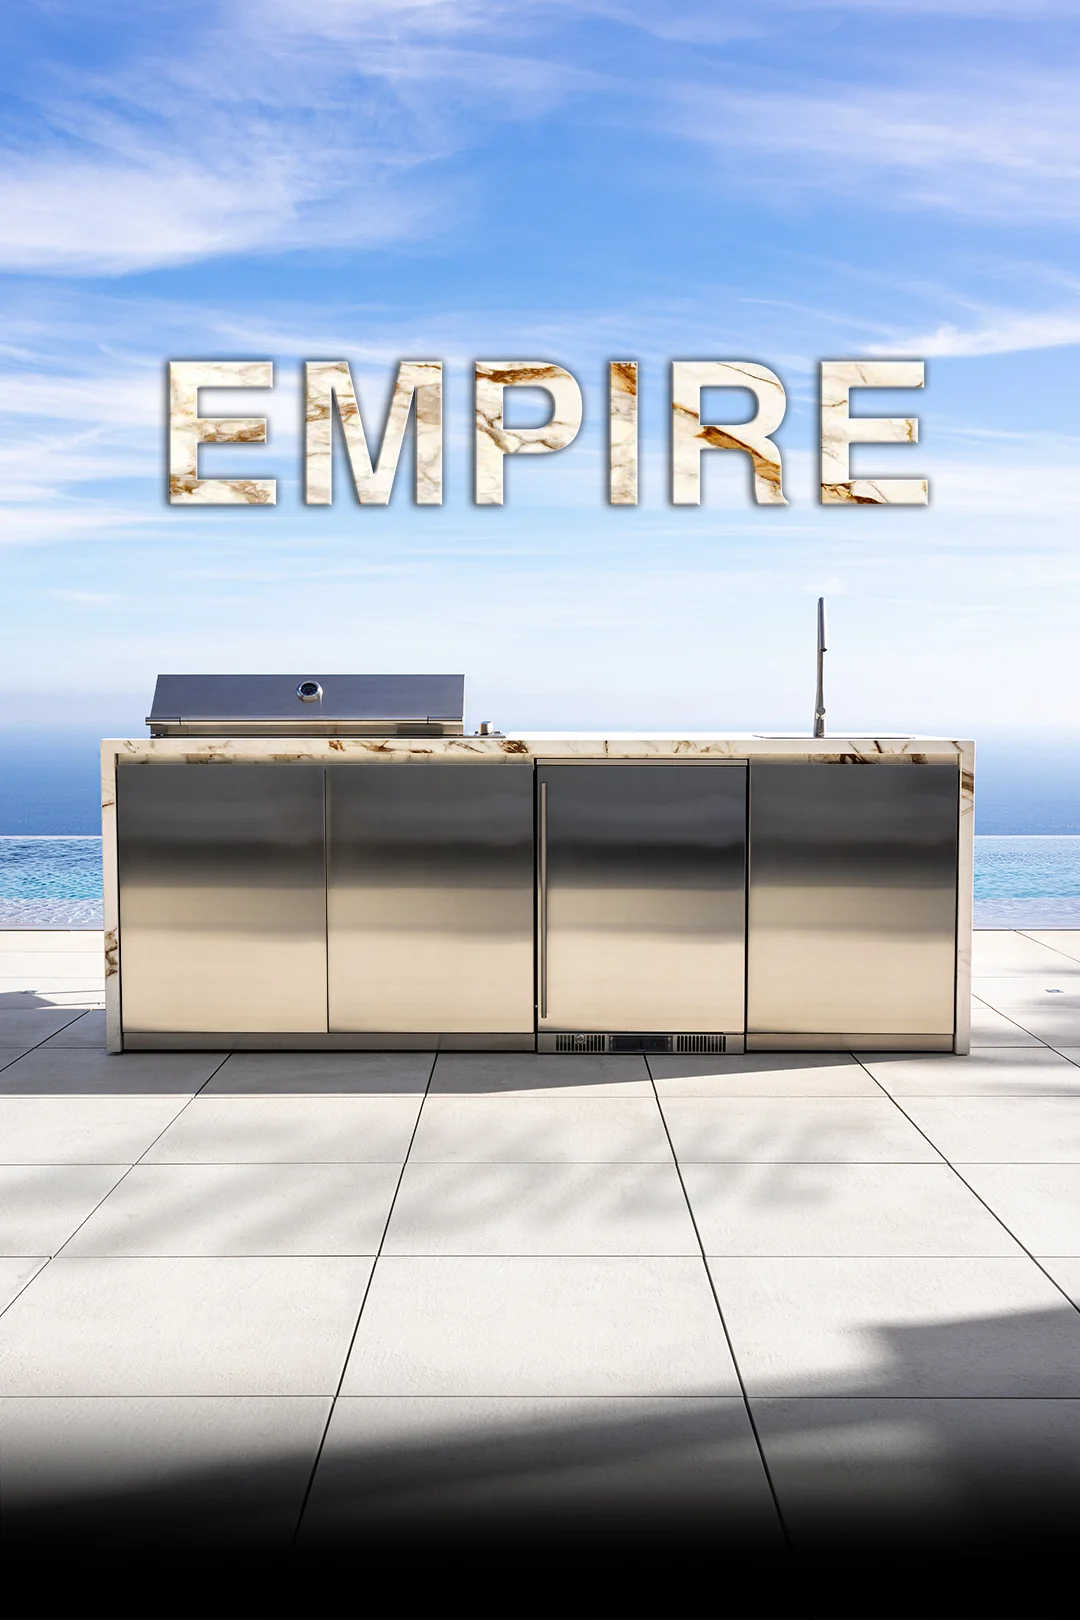 Empire 2